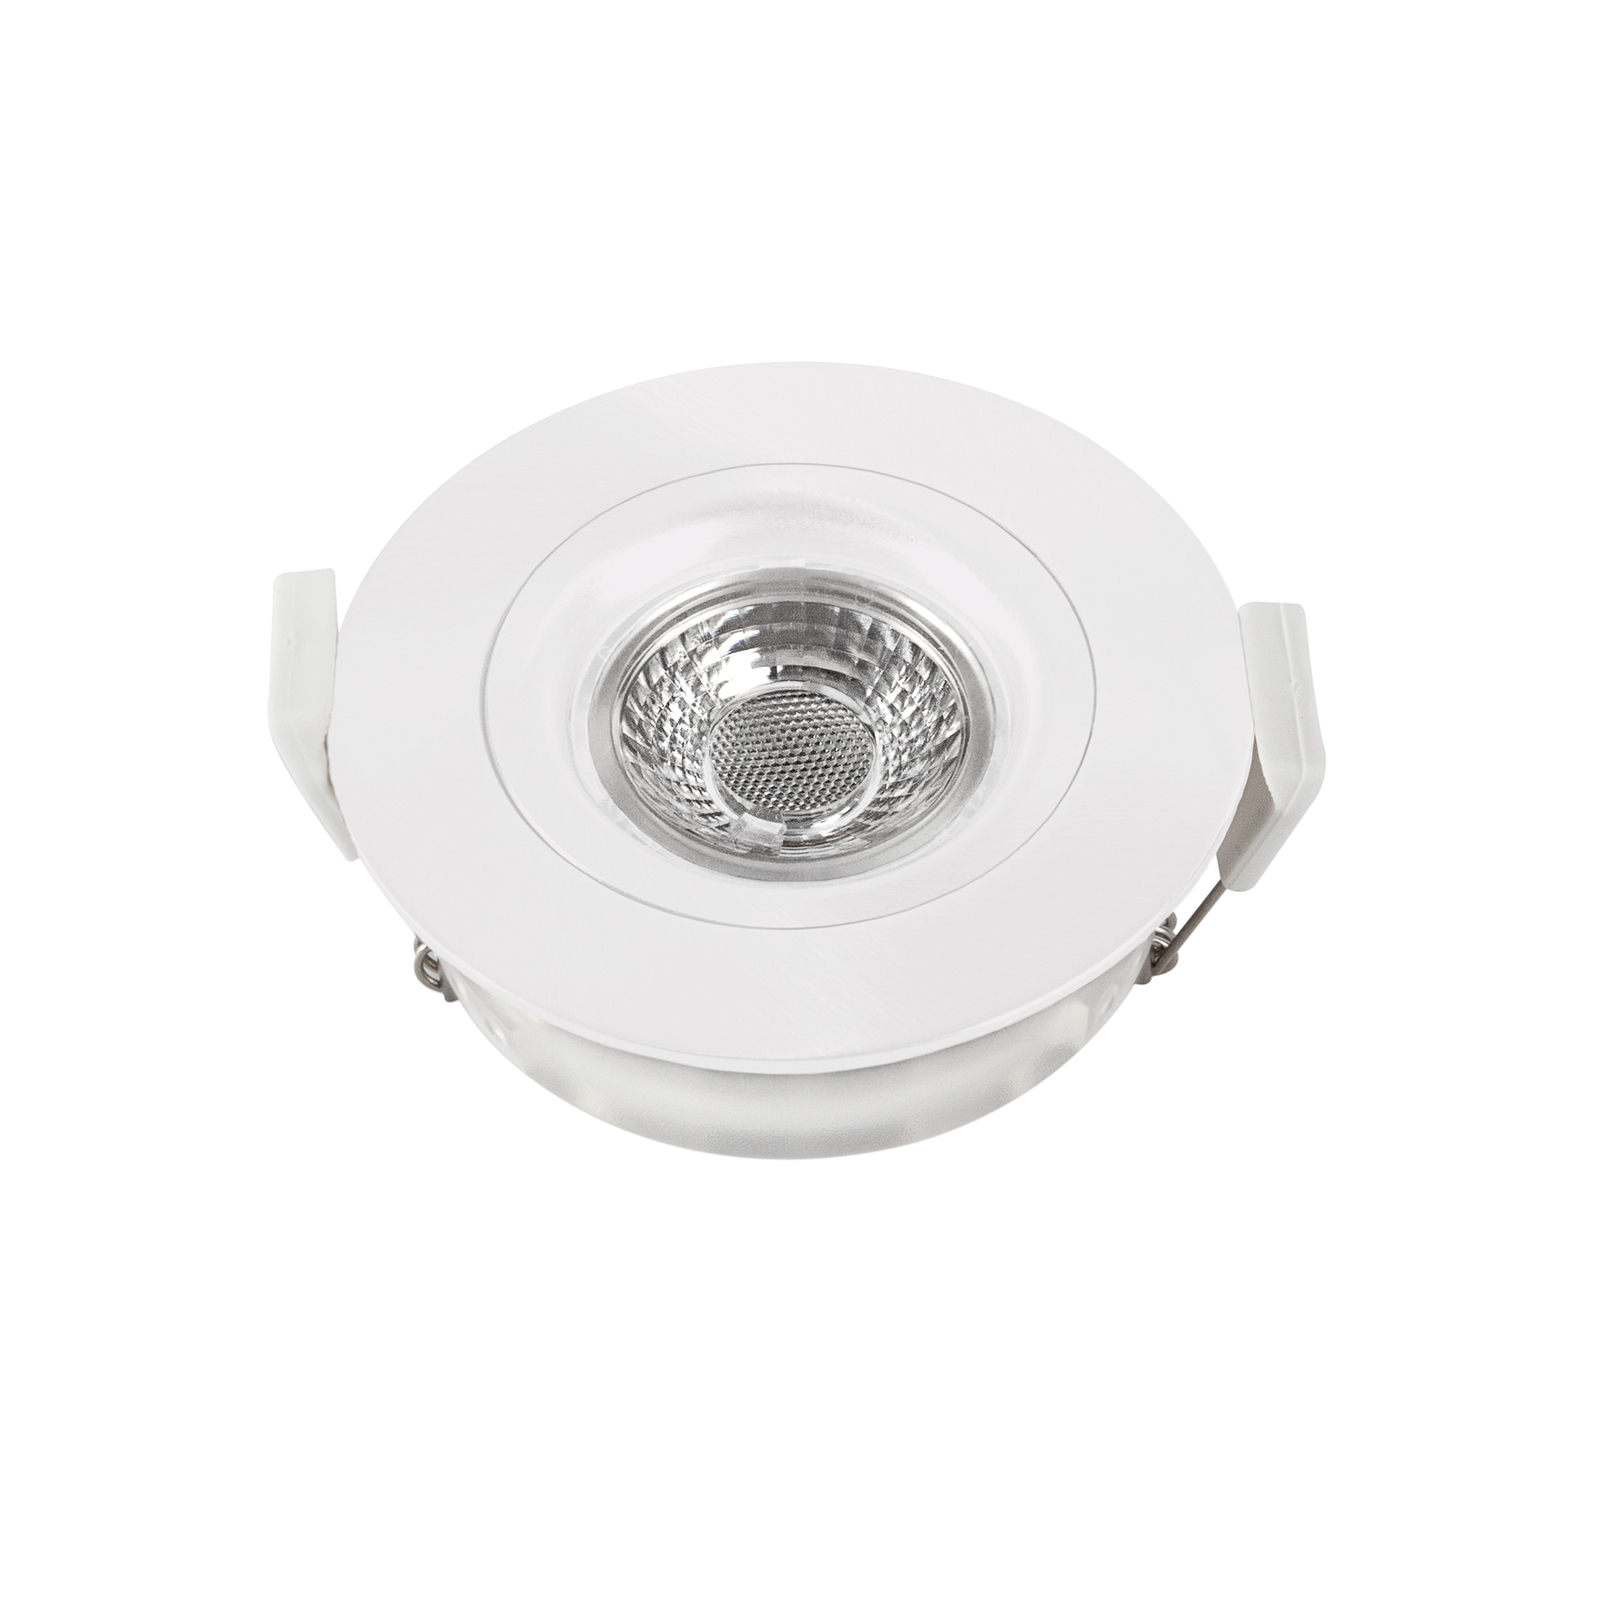 DL6809 LED-downlight, rundt, hvidt